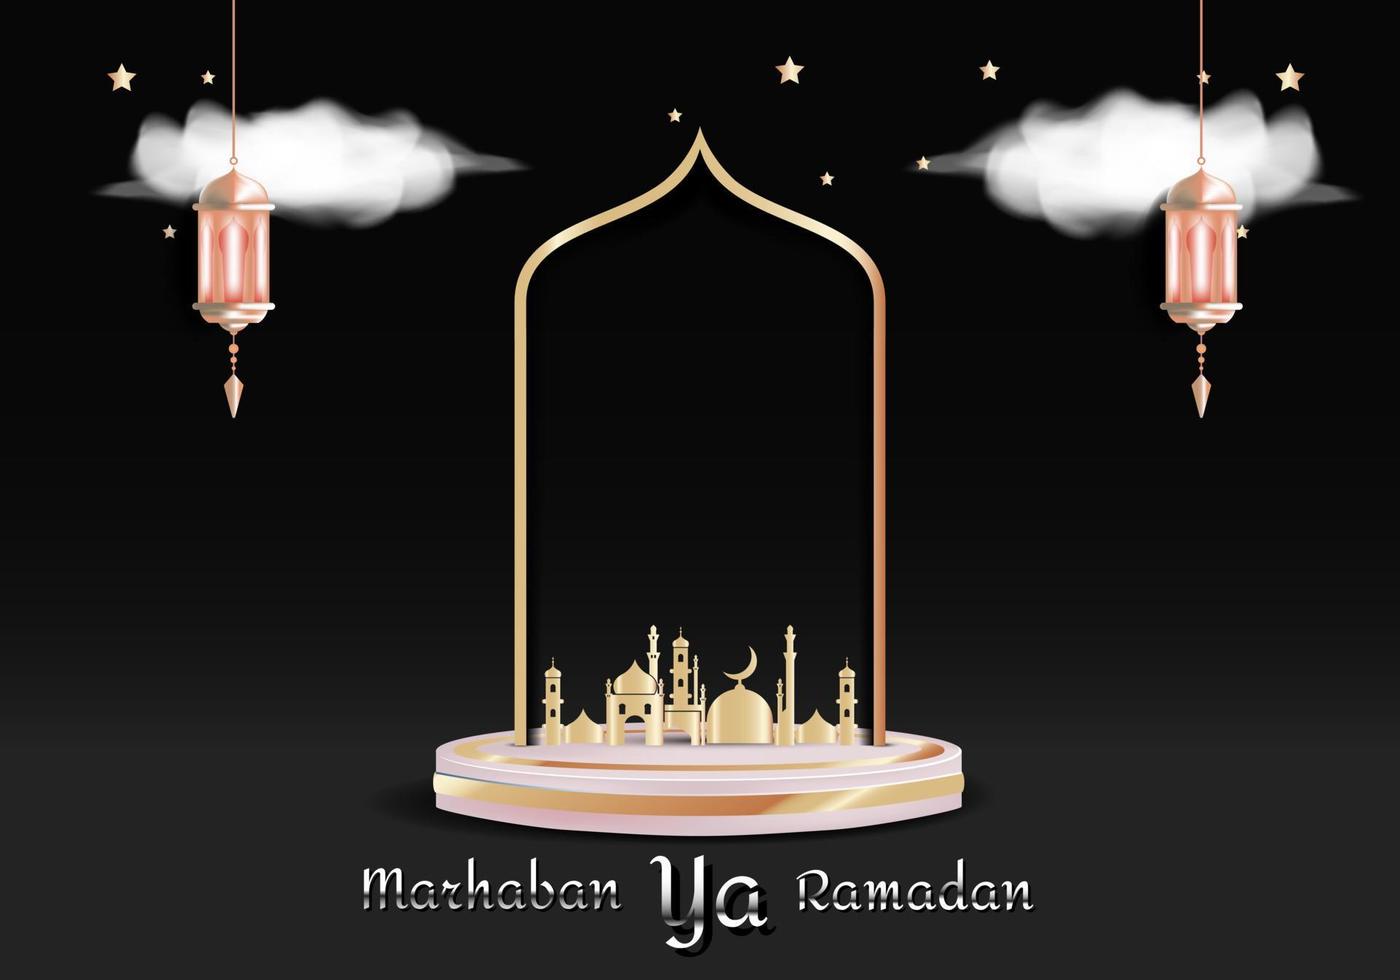 objets de décoration en islam. ornements vectoriels pour le mois du ramadan ou de l'aïd al-fitr. illustration vectorielle. vecteur